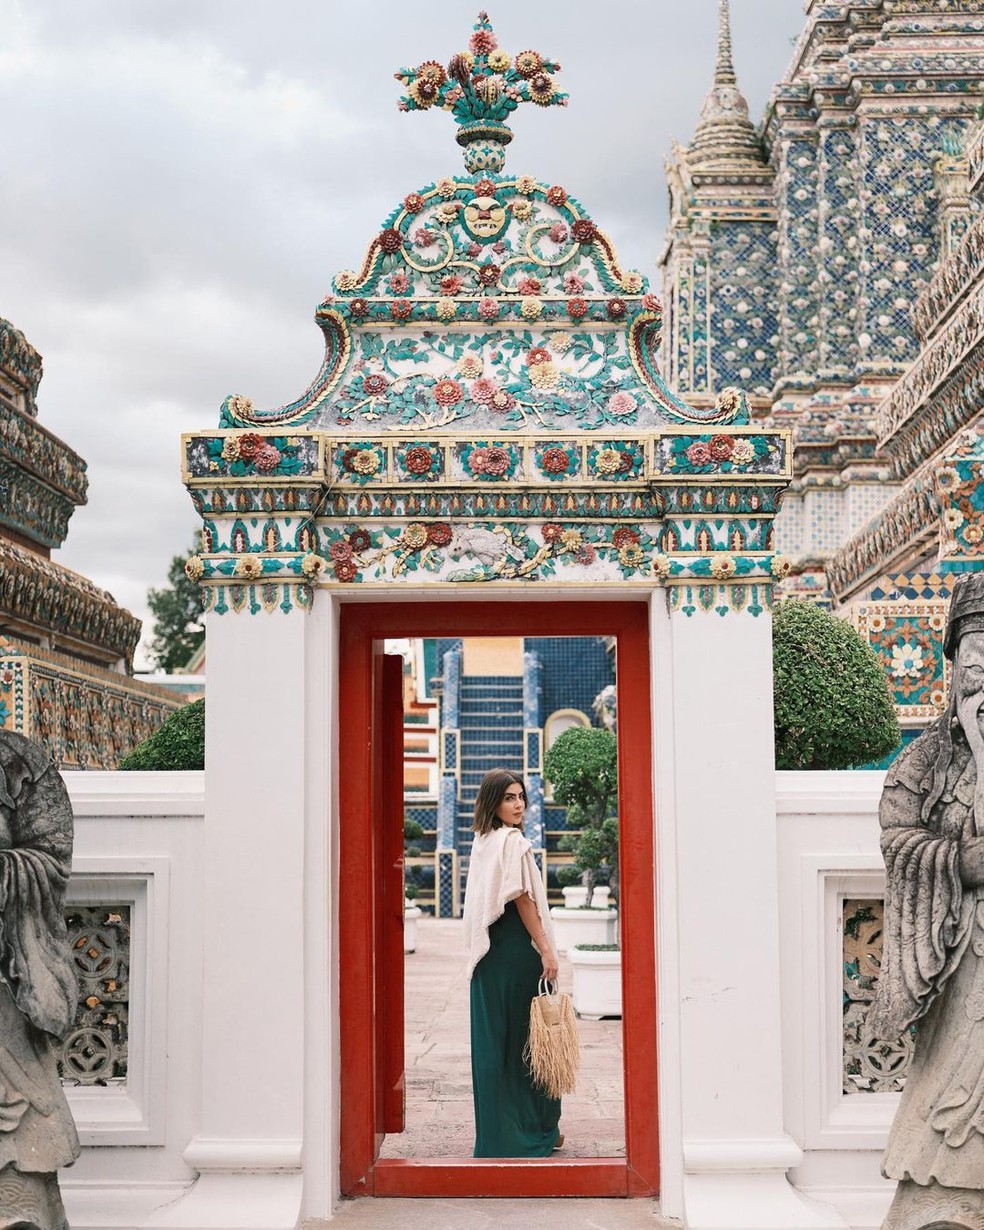 Jade Picon na Tailândia   — Foto:  Reprodução/Instagram